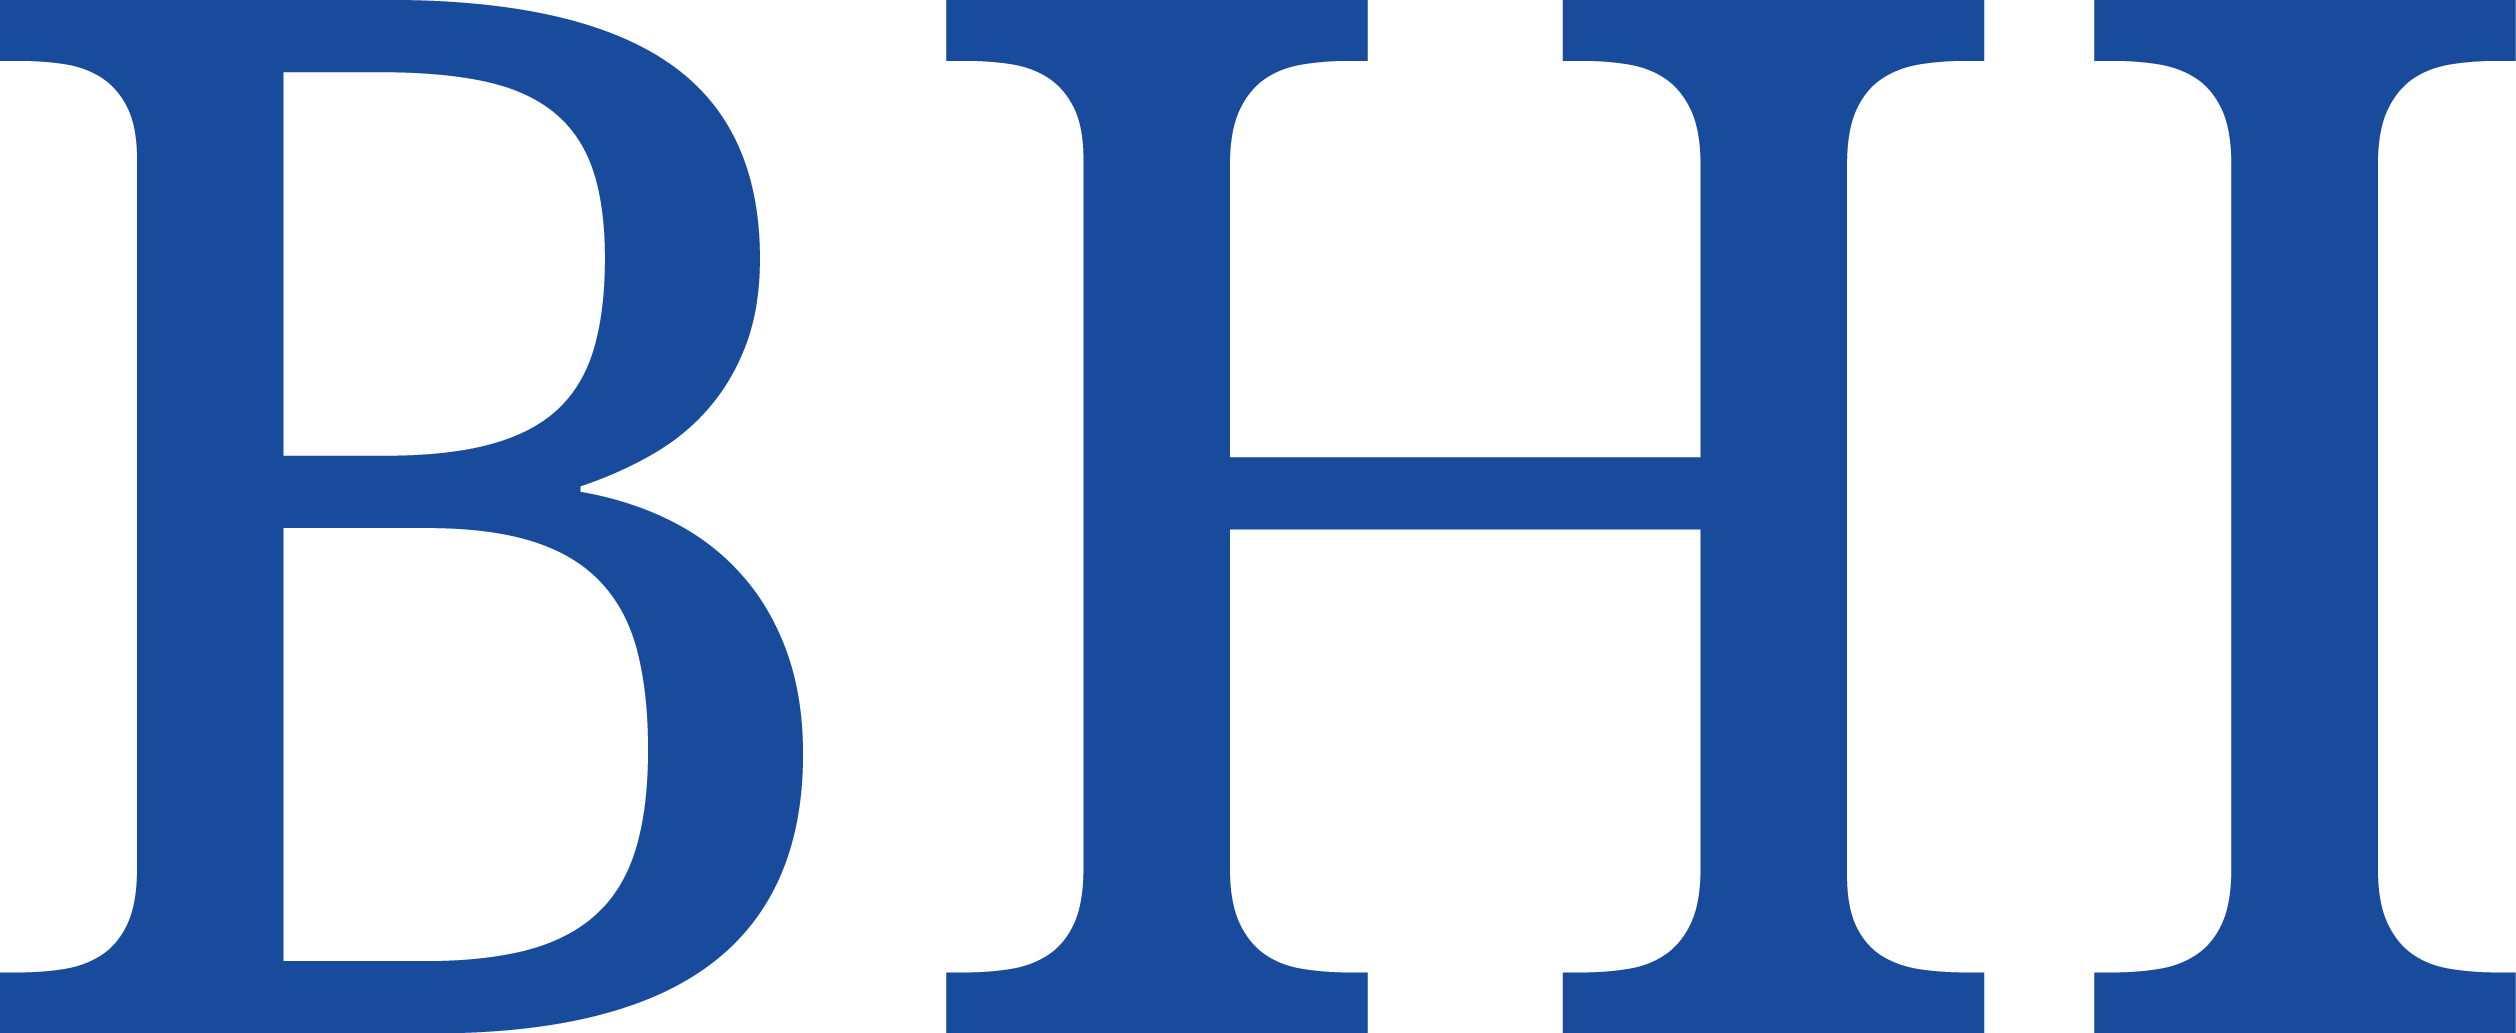 Bhi Logo - Index of /wp-content/uploads/2017/01